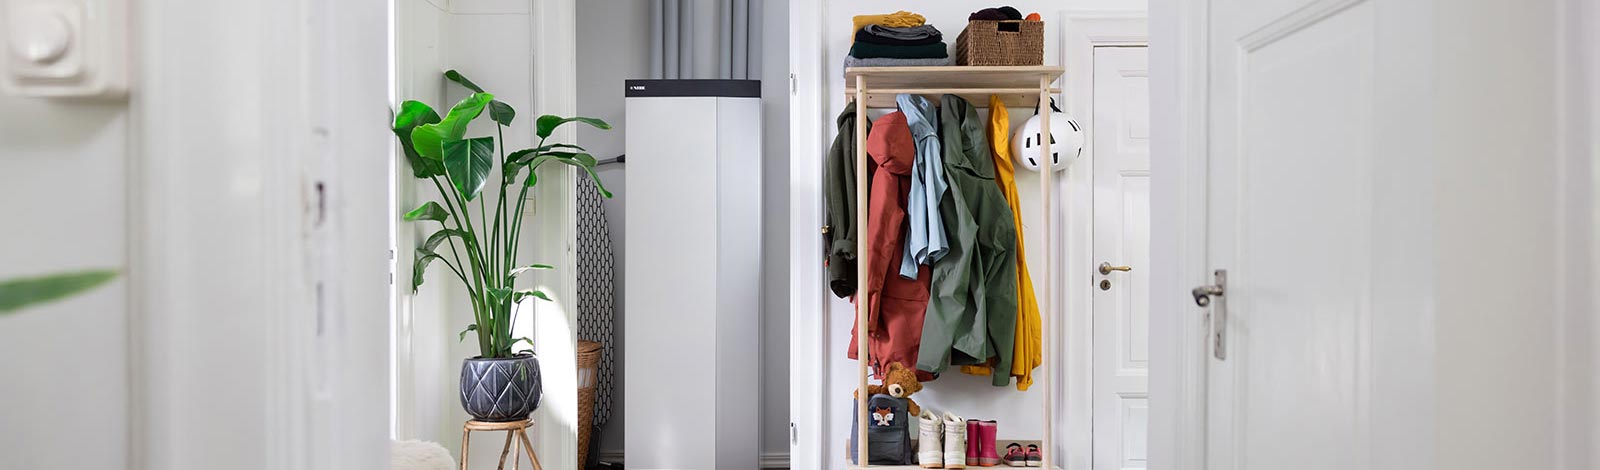 Die NIBE Wärmepumpe S1255 integriert sich perfekt auch im Wohnraum